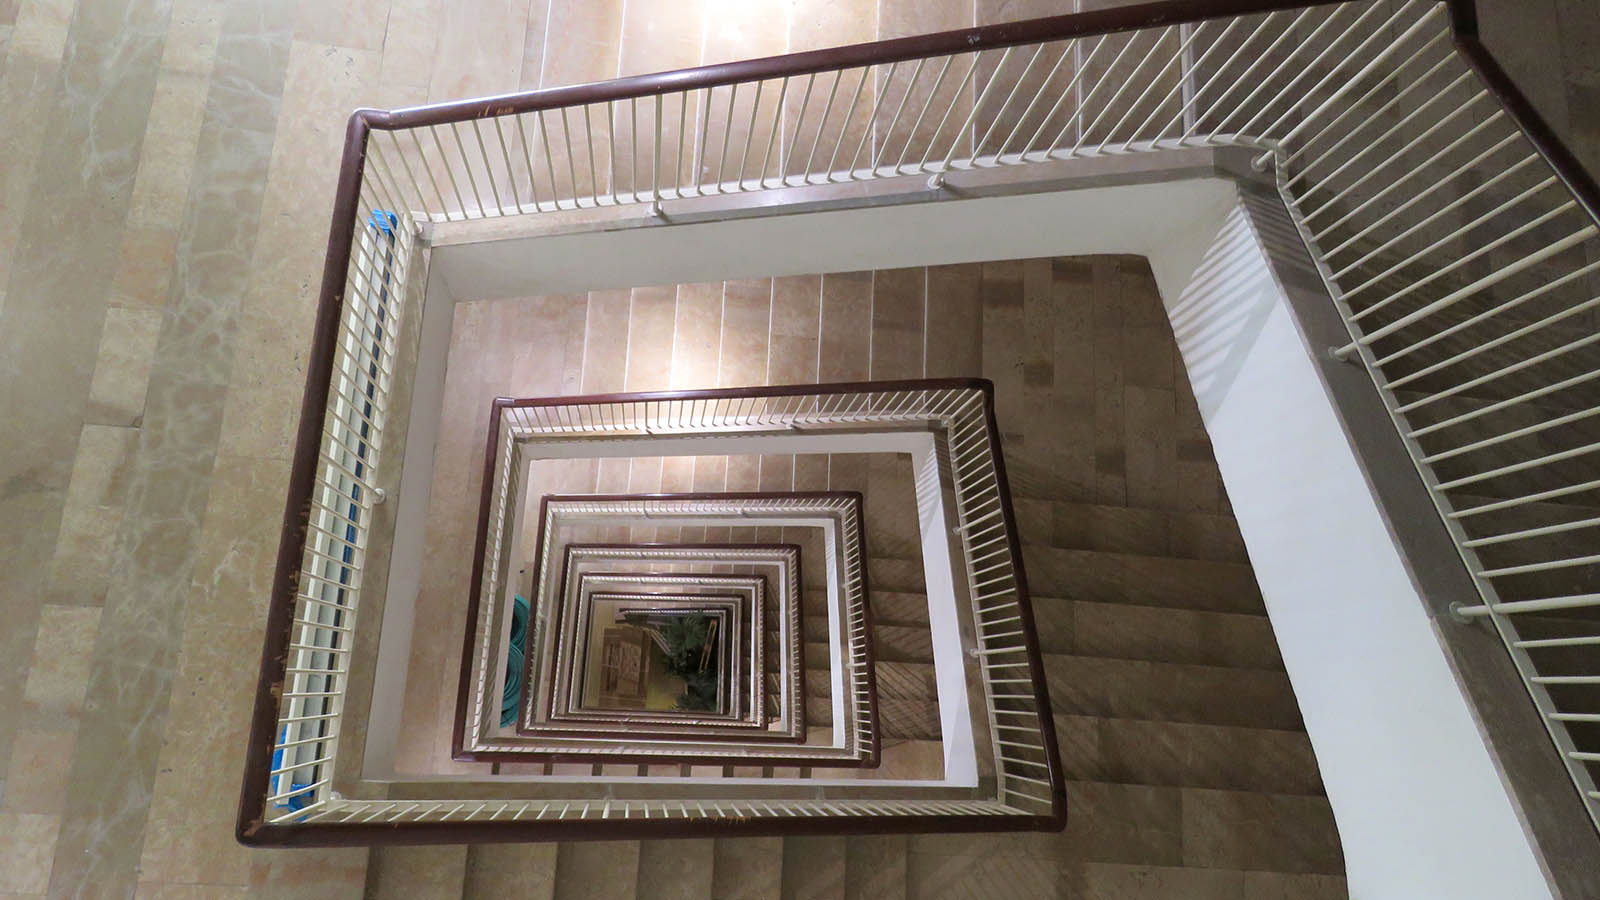 درابزين الدرج الذي يؤدي الى الطوابق العلوية (تصوير: ديانا فال)